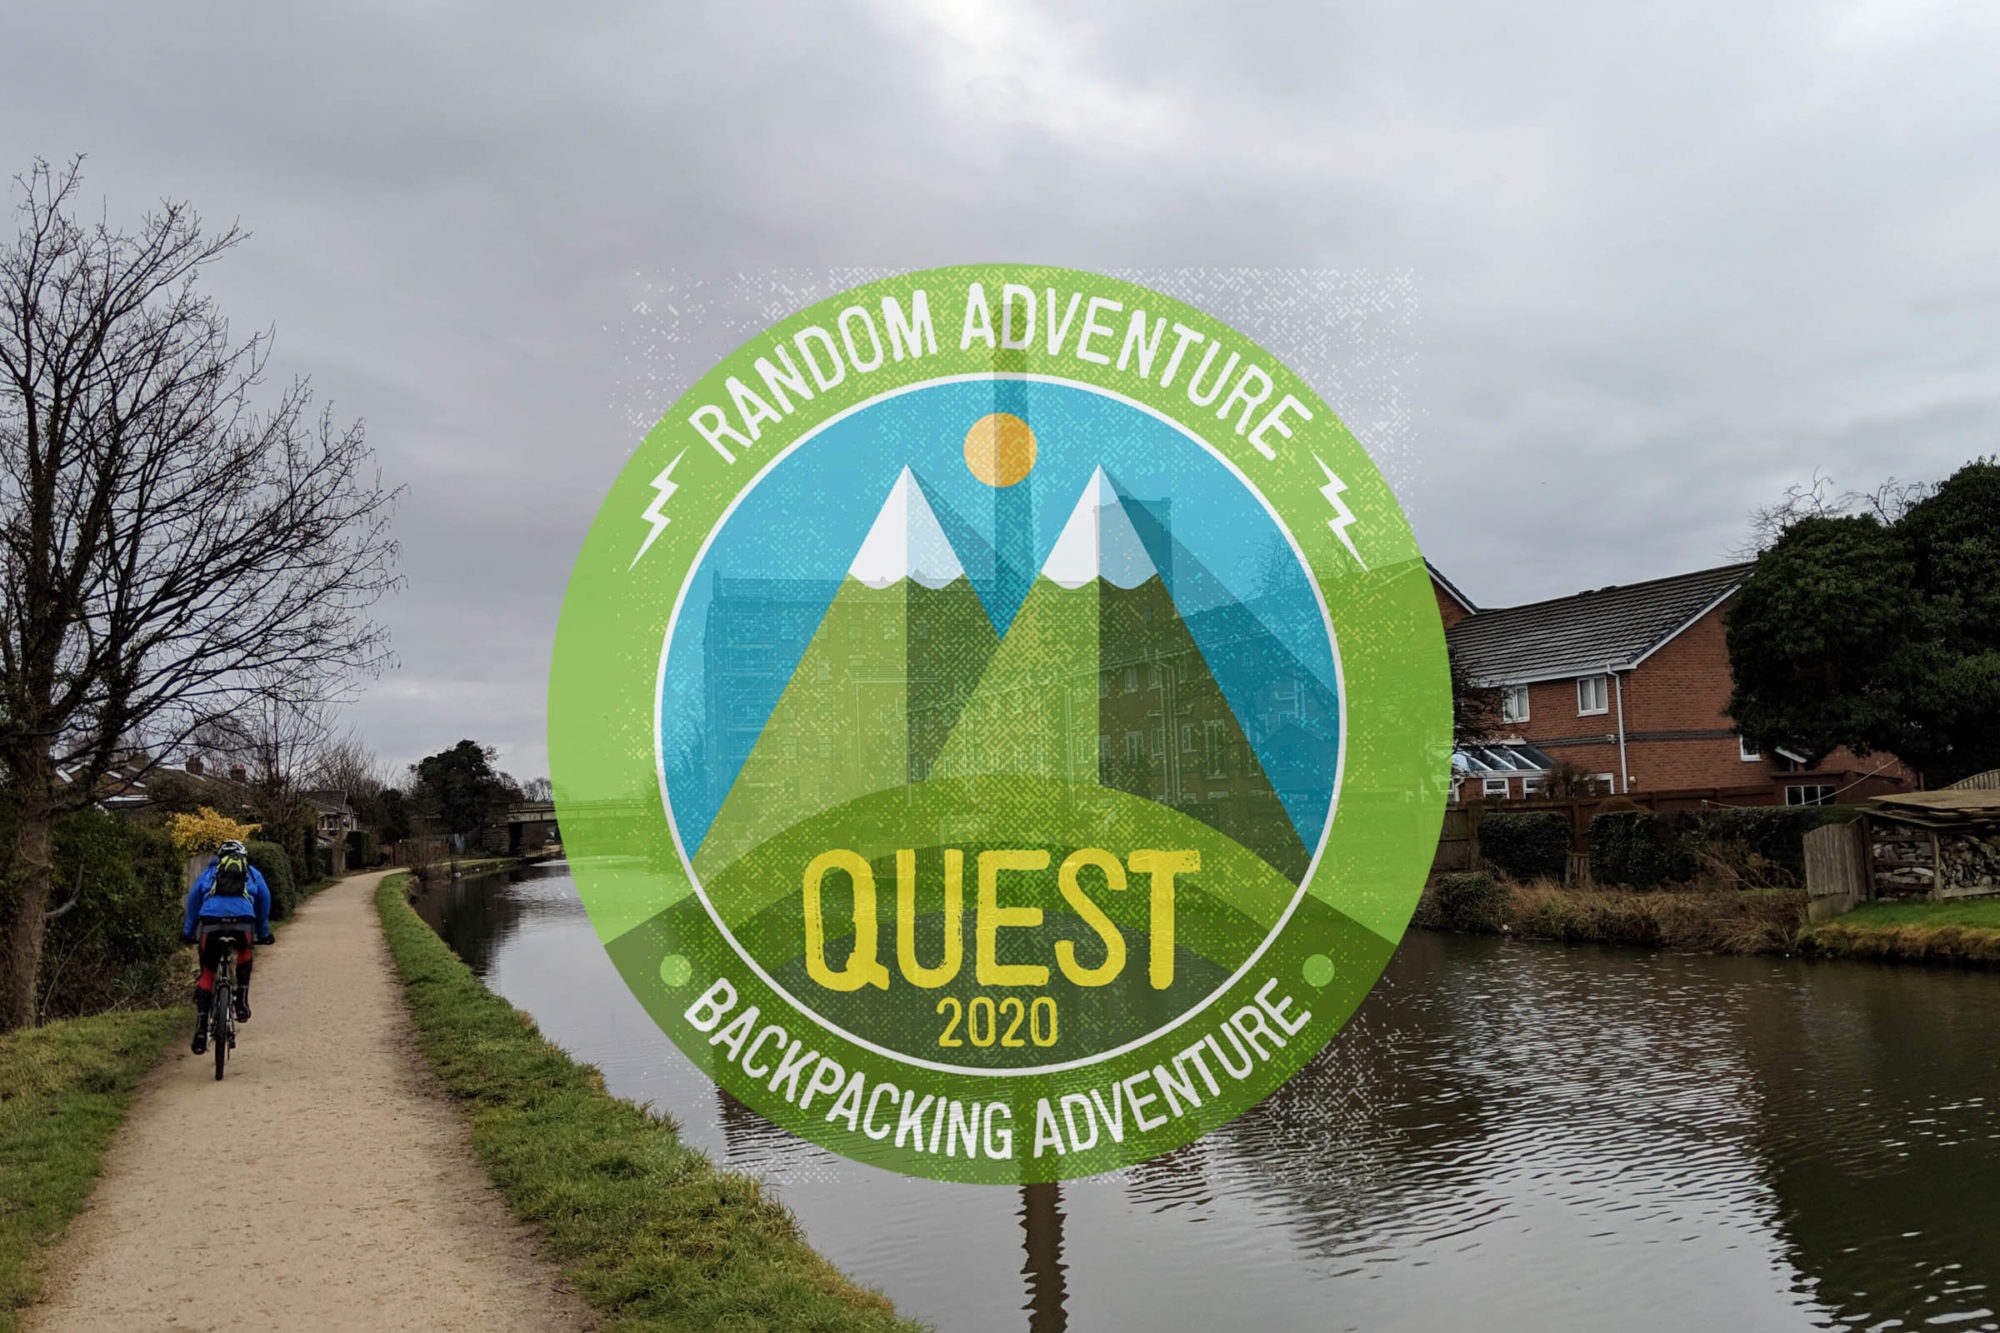 Random Adventure Quest 2020